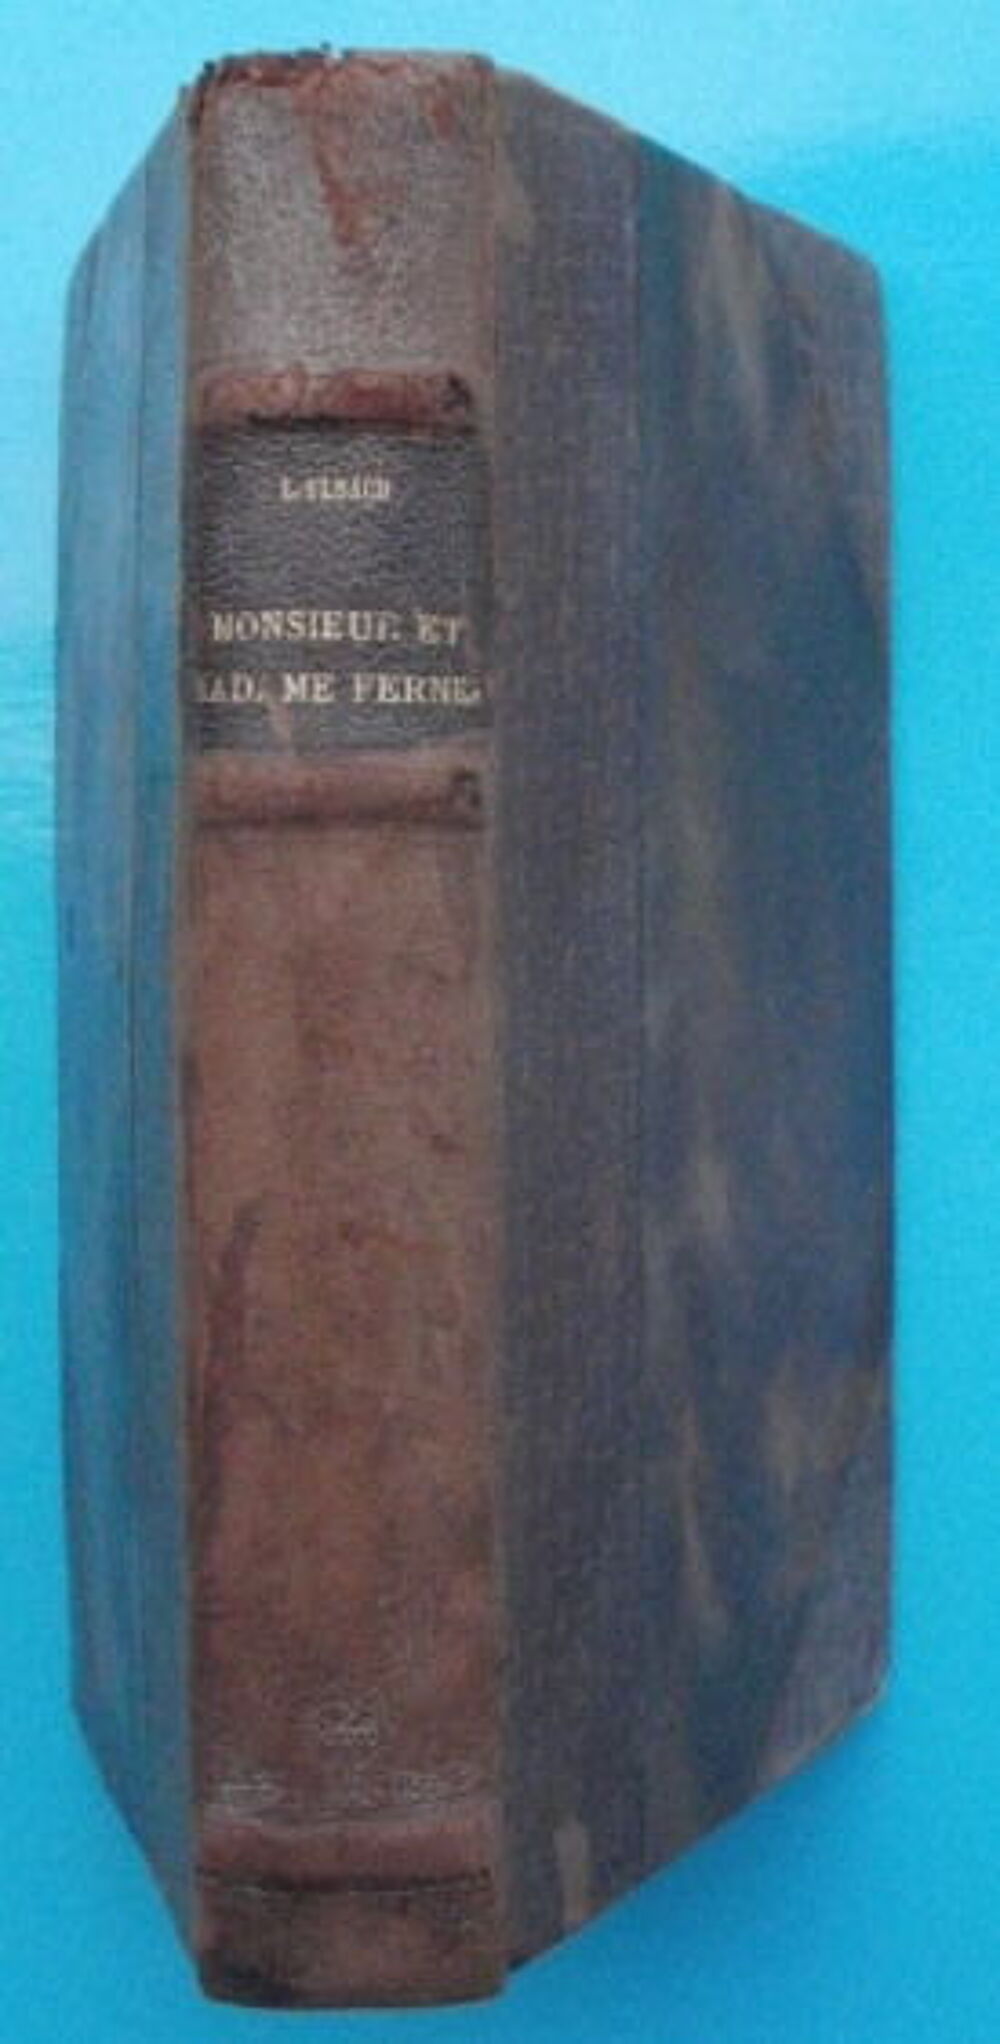  Louis ULBACH Monsieur et Madame FERNEL - 1884 Livres et BD